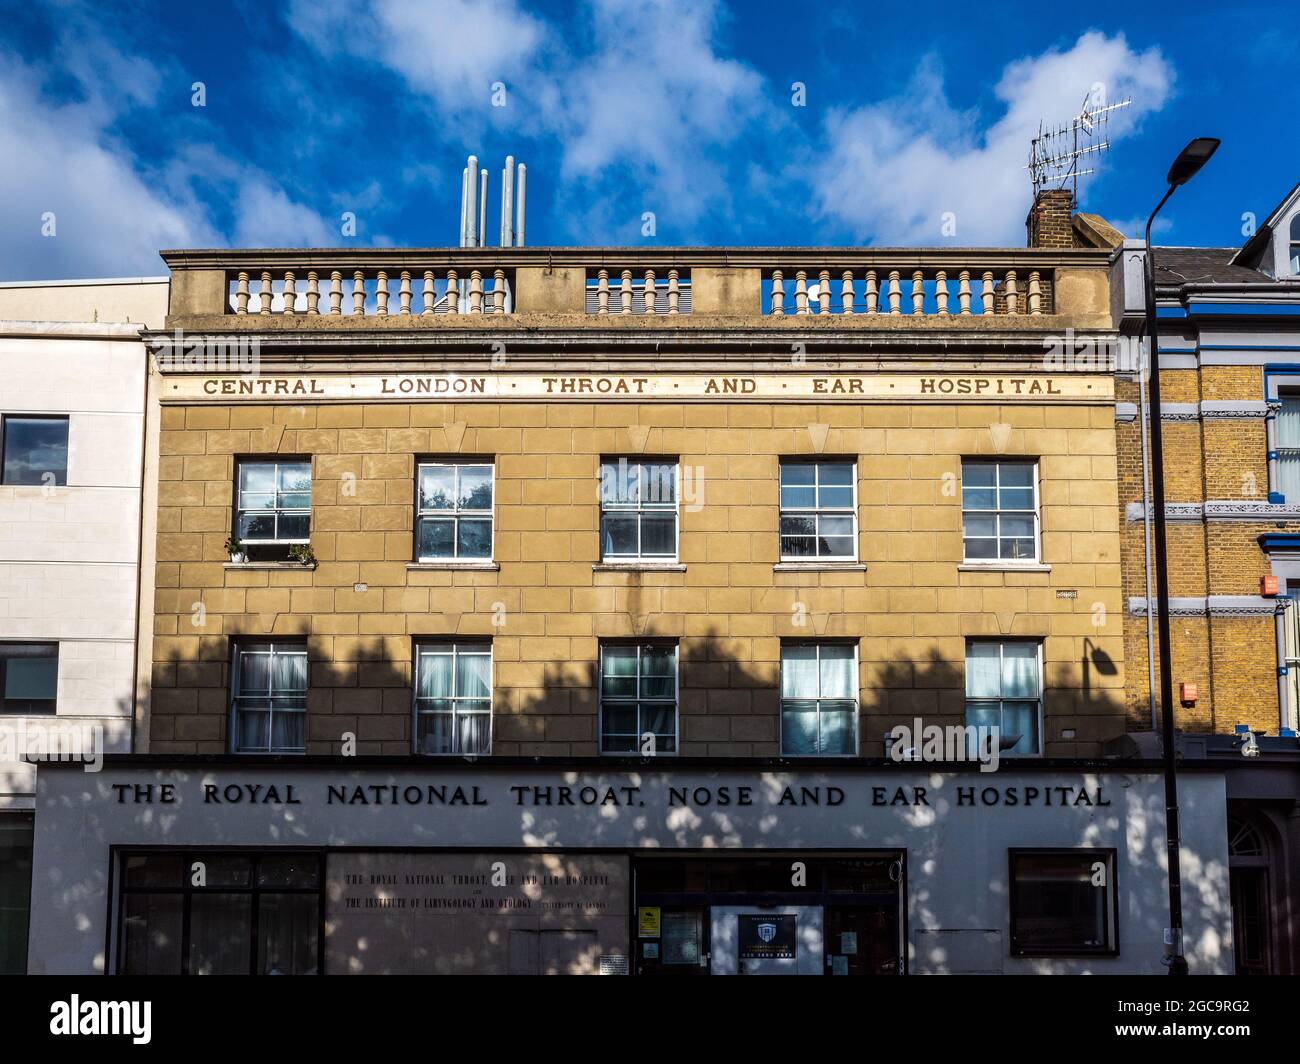 La Royal National Gorge nez et oreilles Hôpital sur Gray's Inn Road - Londres. Une partie de l'University College London Hospitals NHS Foundation Trust. Edt 1874. Banque D'Images